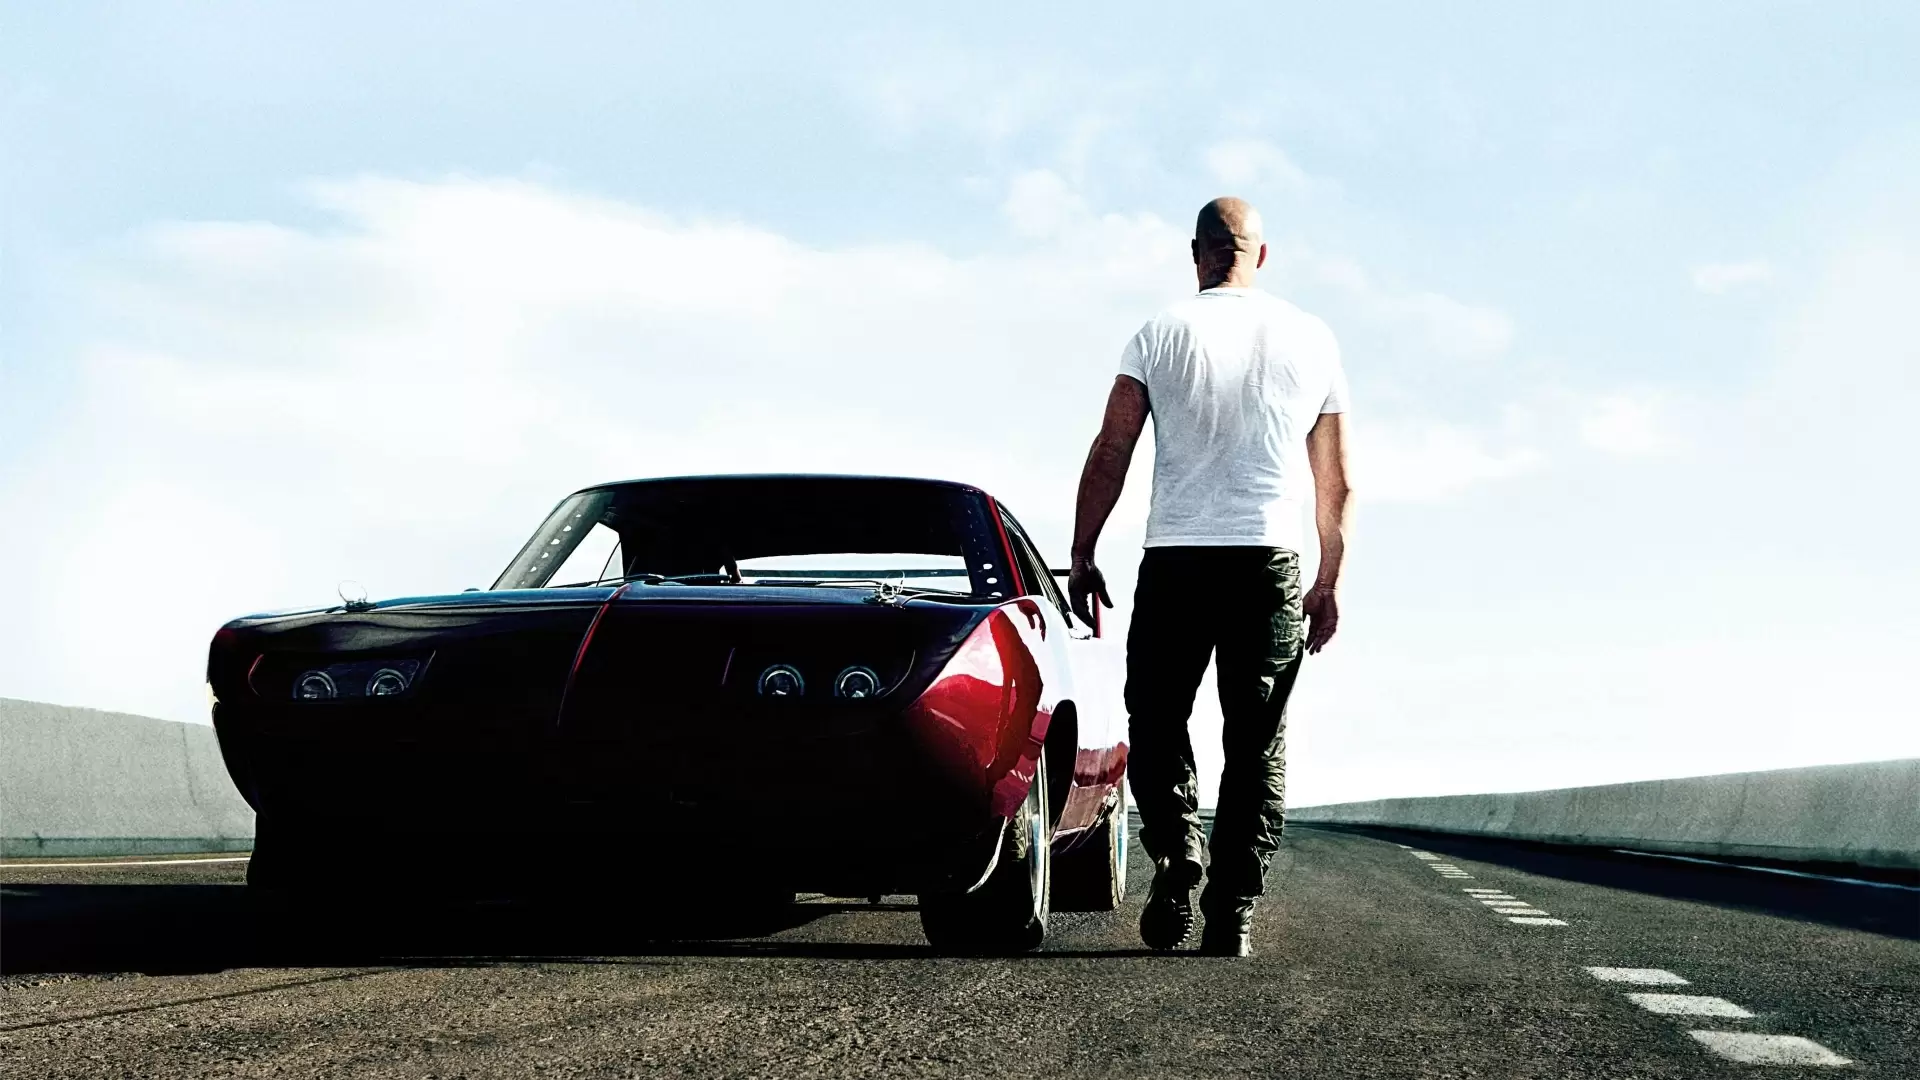 دانلود فیلم Fast & Furious 6 2013 (سریع و خشمگین ۶) با زیرنویس فارسی و تماشای آنلاین